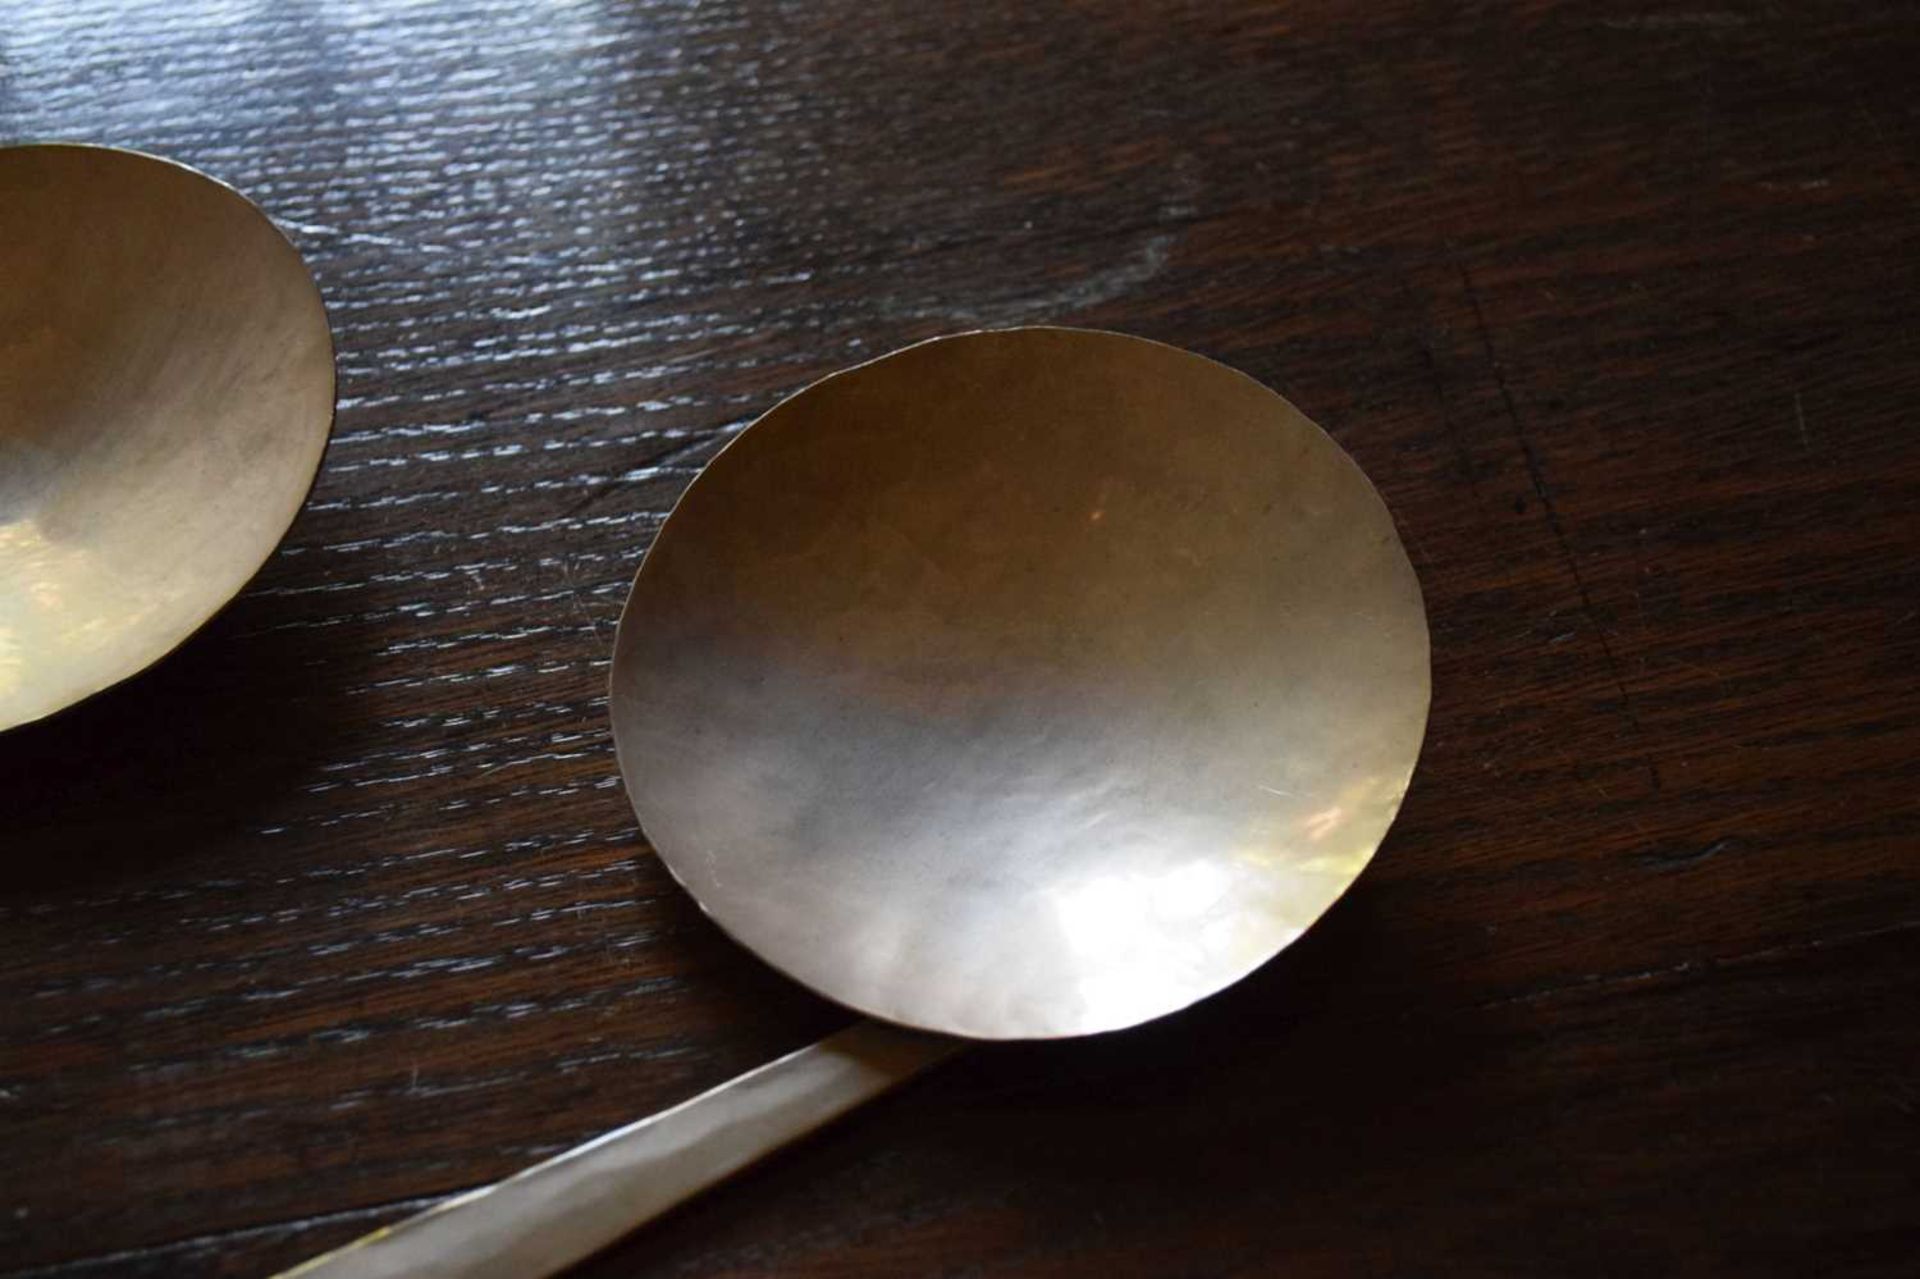 Pair of Elizabeth II Modernist silver spoons by Philippa Jane Merriman - Image 3 of 8